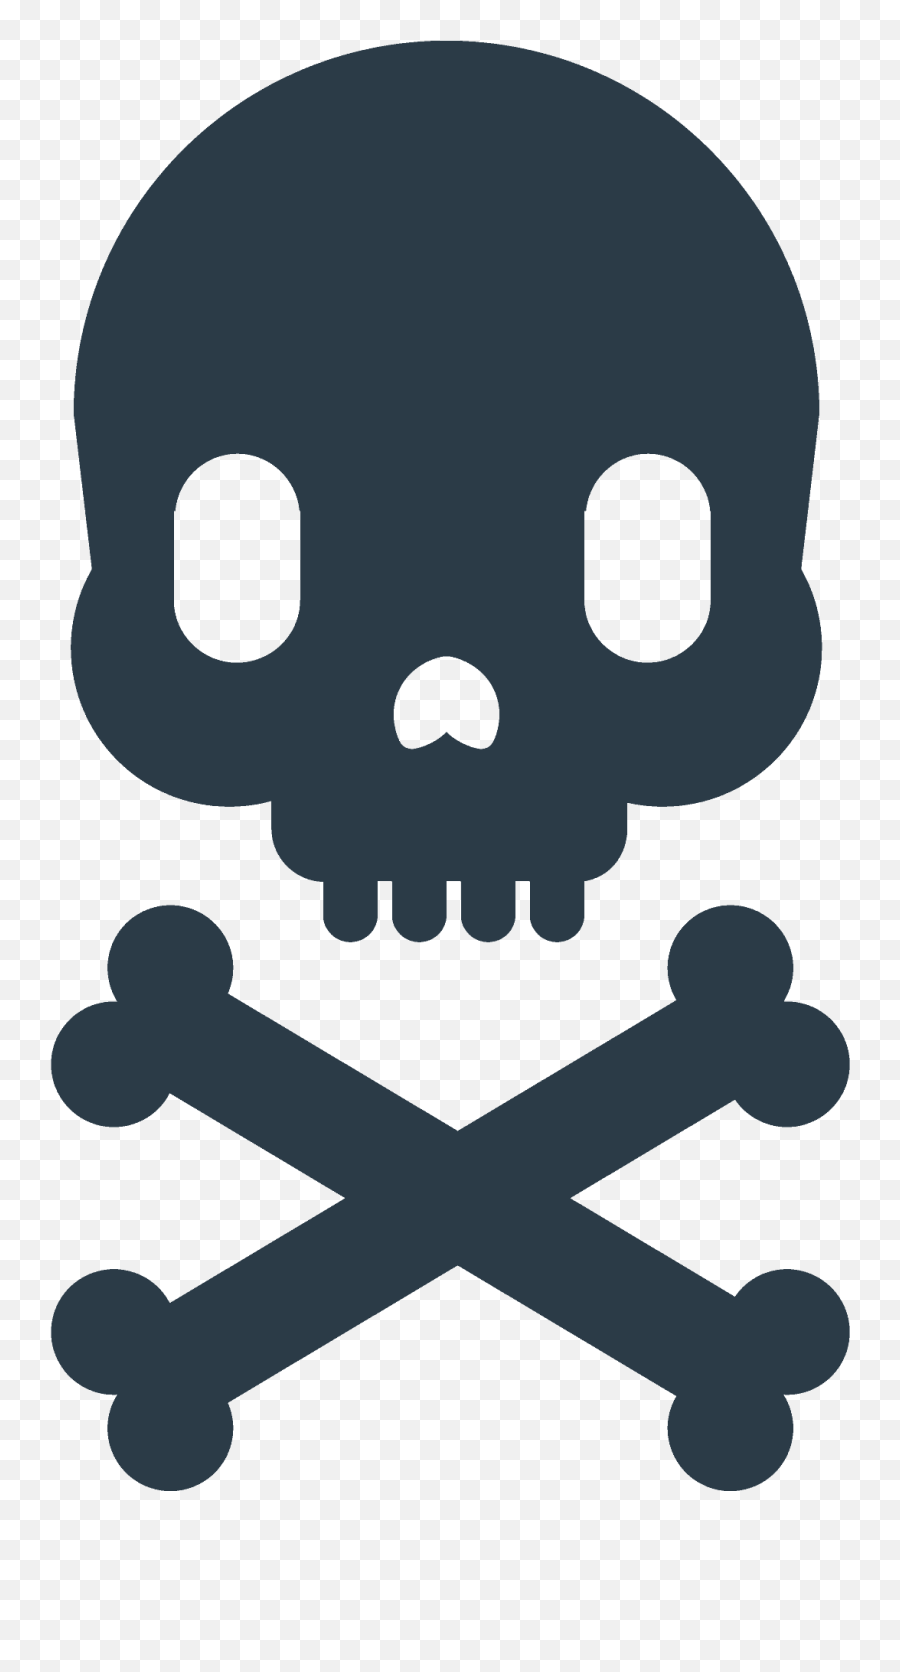 Skull And Crossbones Emoji Clipart - Death Warning,Skull Emoji Png